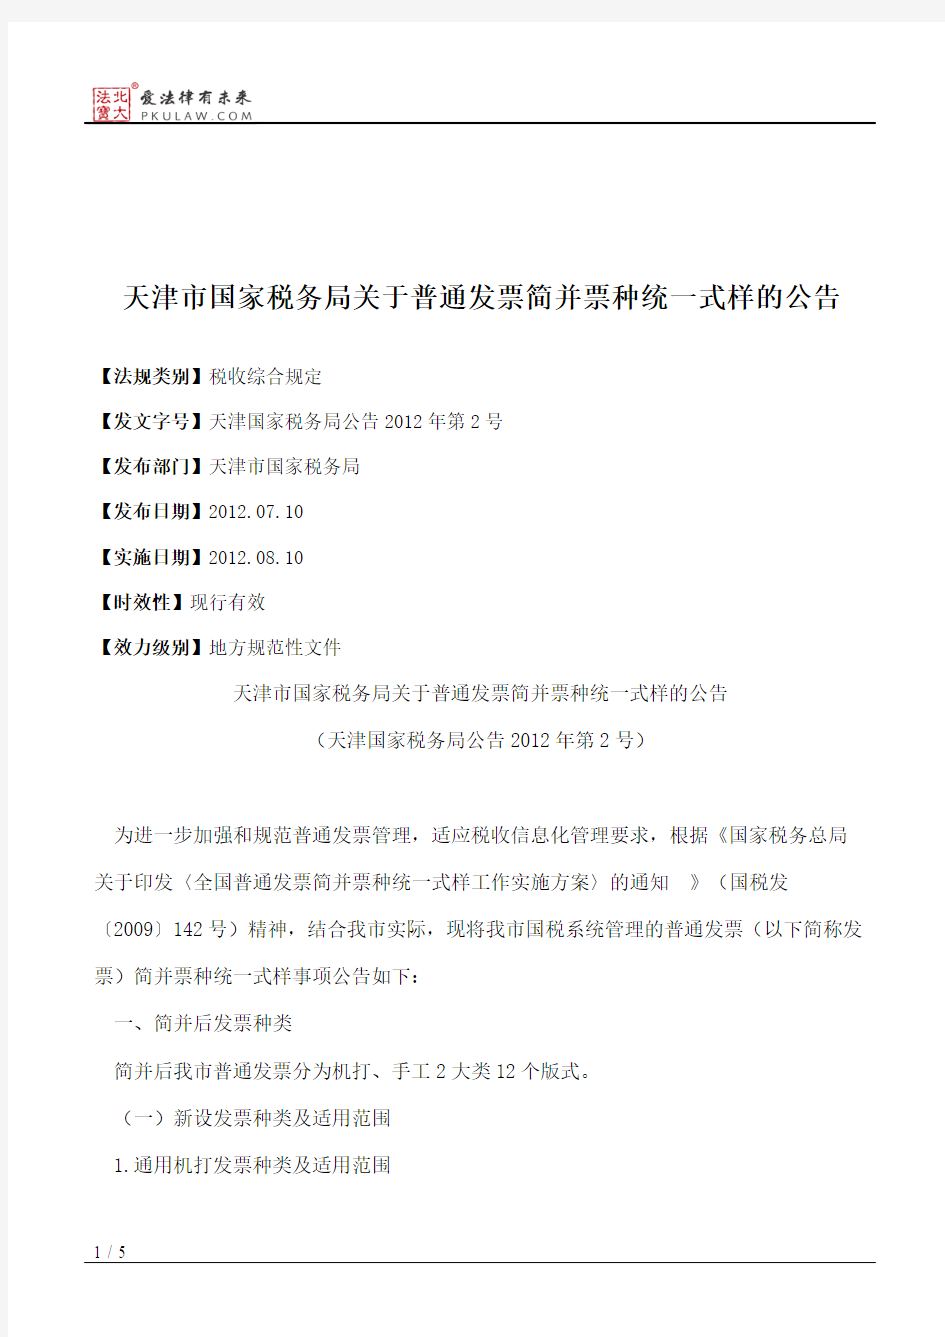 天津市国家税务局关于普通发票简并票种统一式样的公告